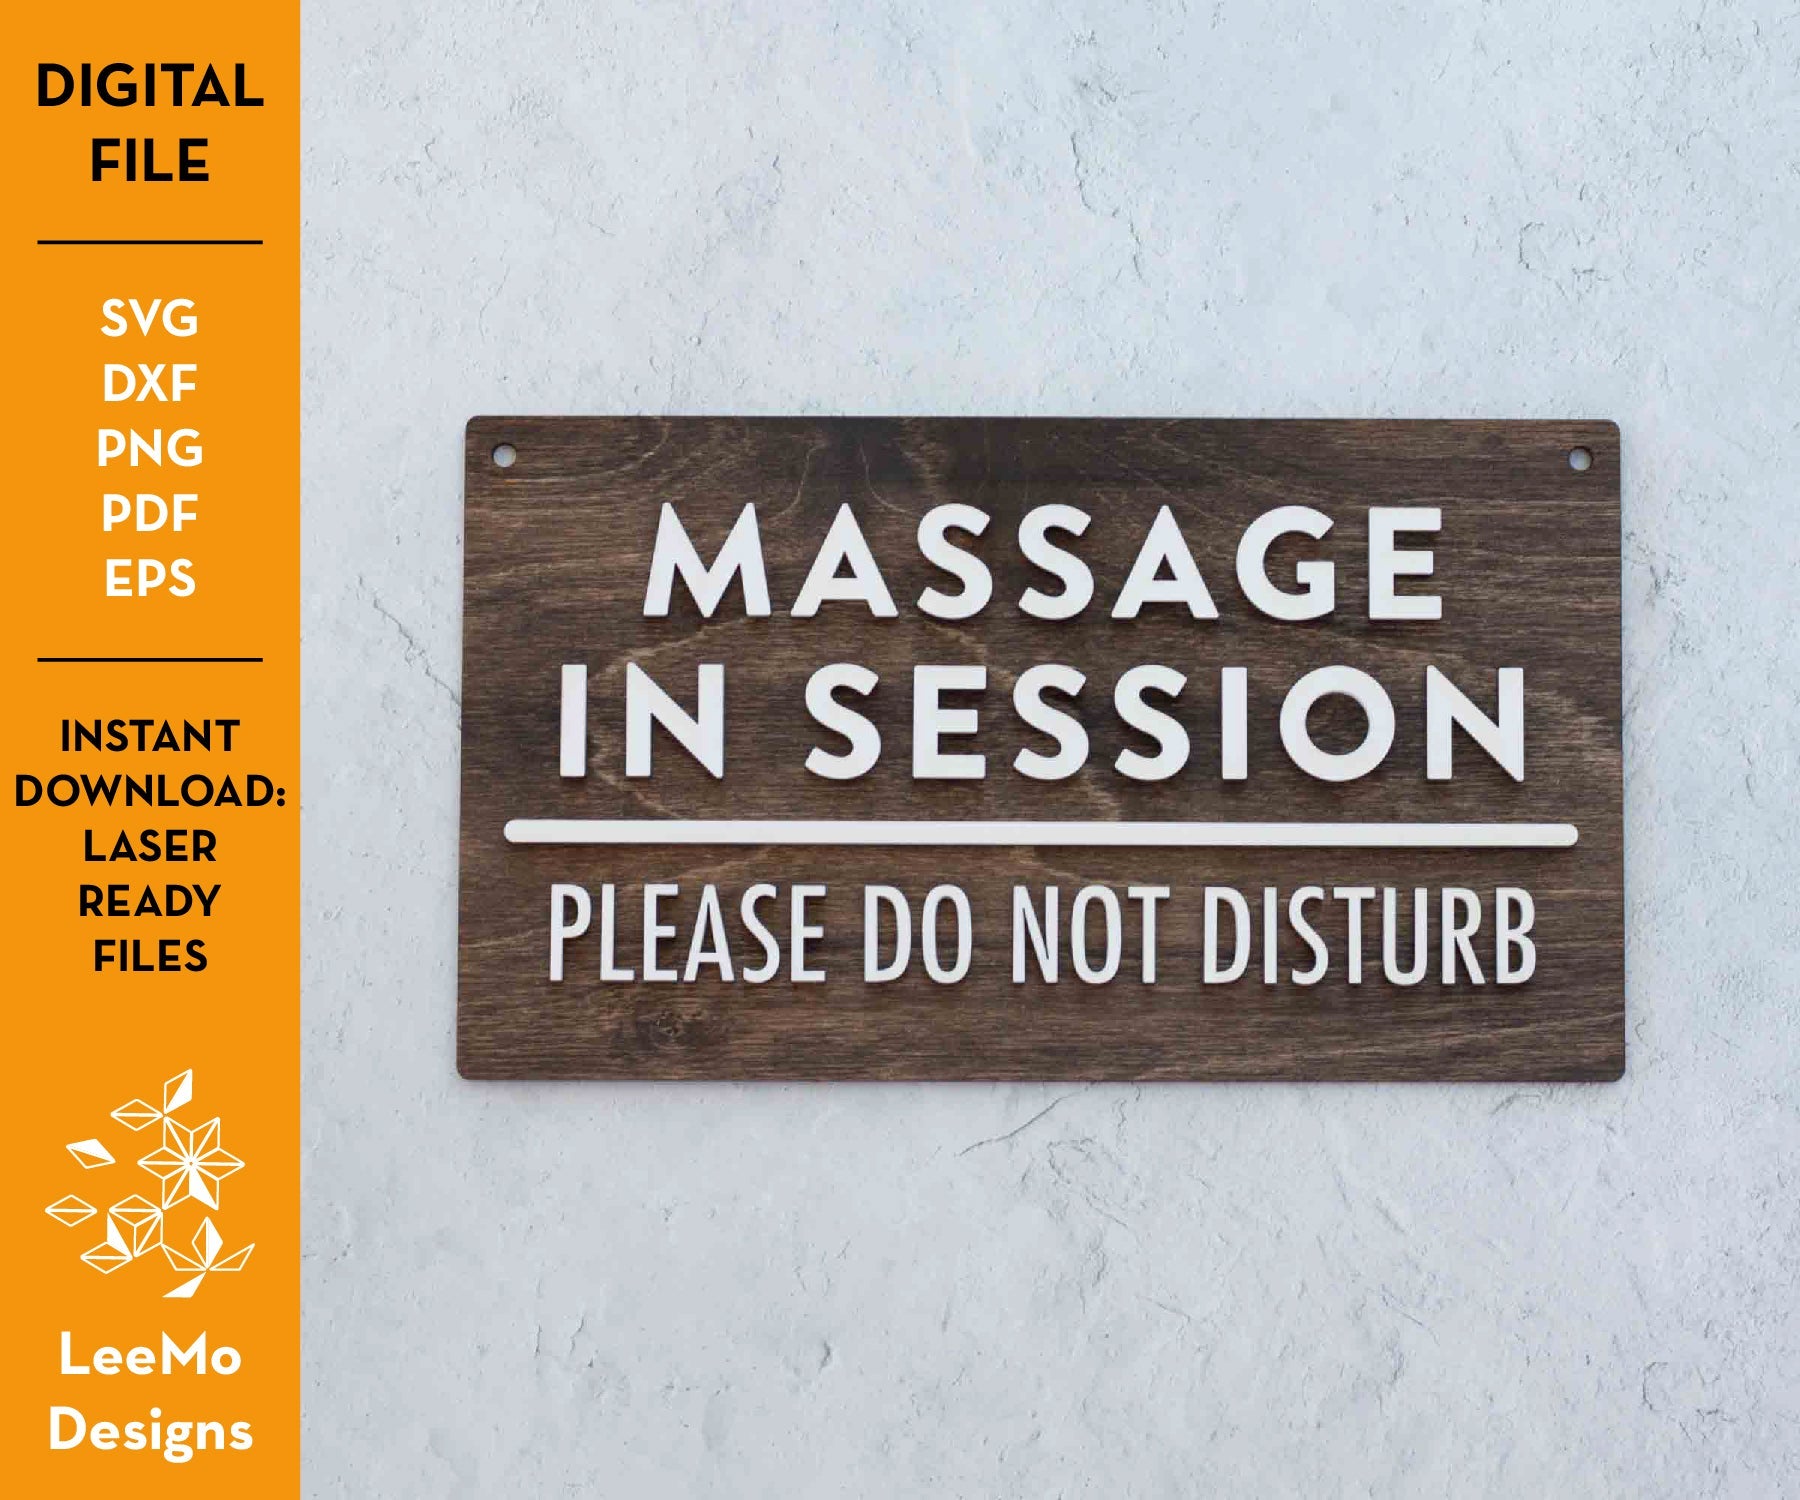 Digital Download: Massage In Session Sign - LeeMo Designs